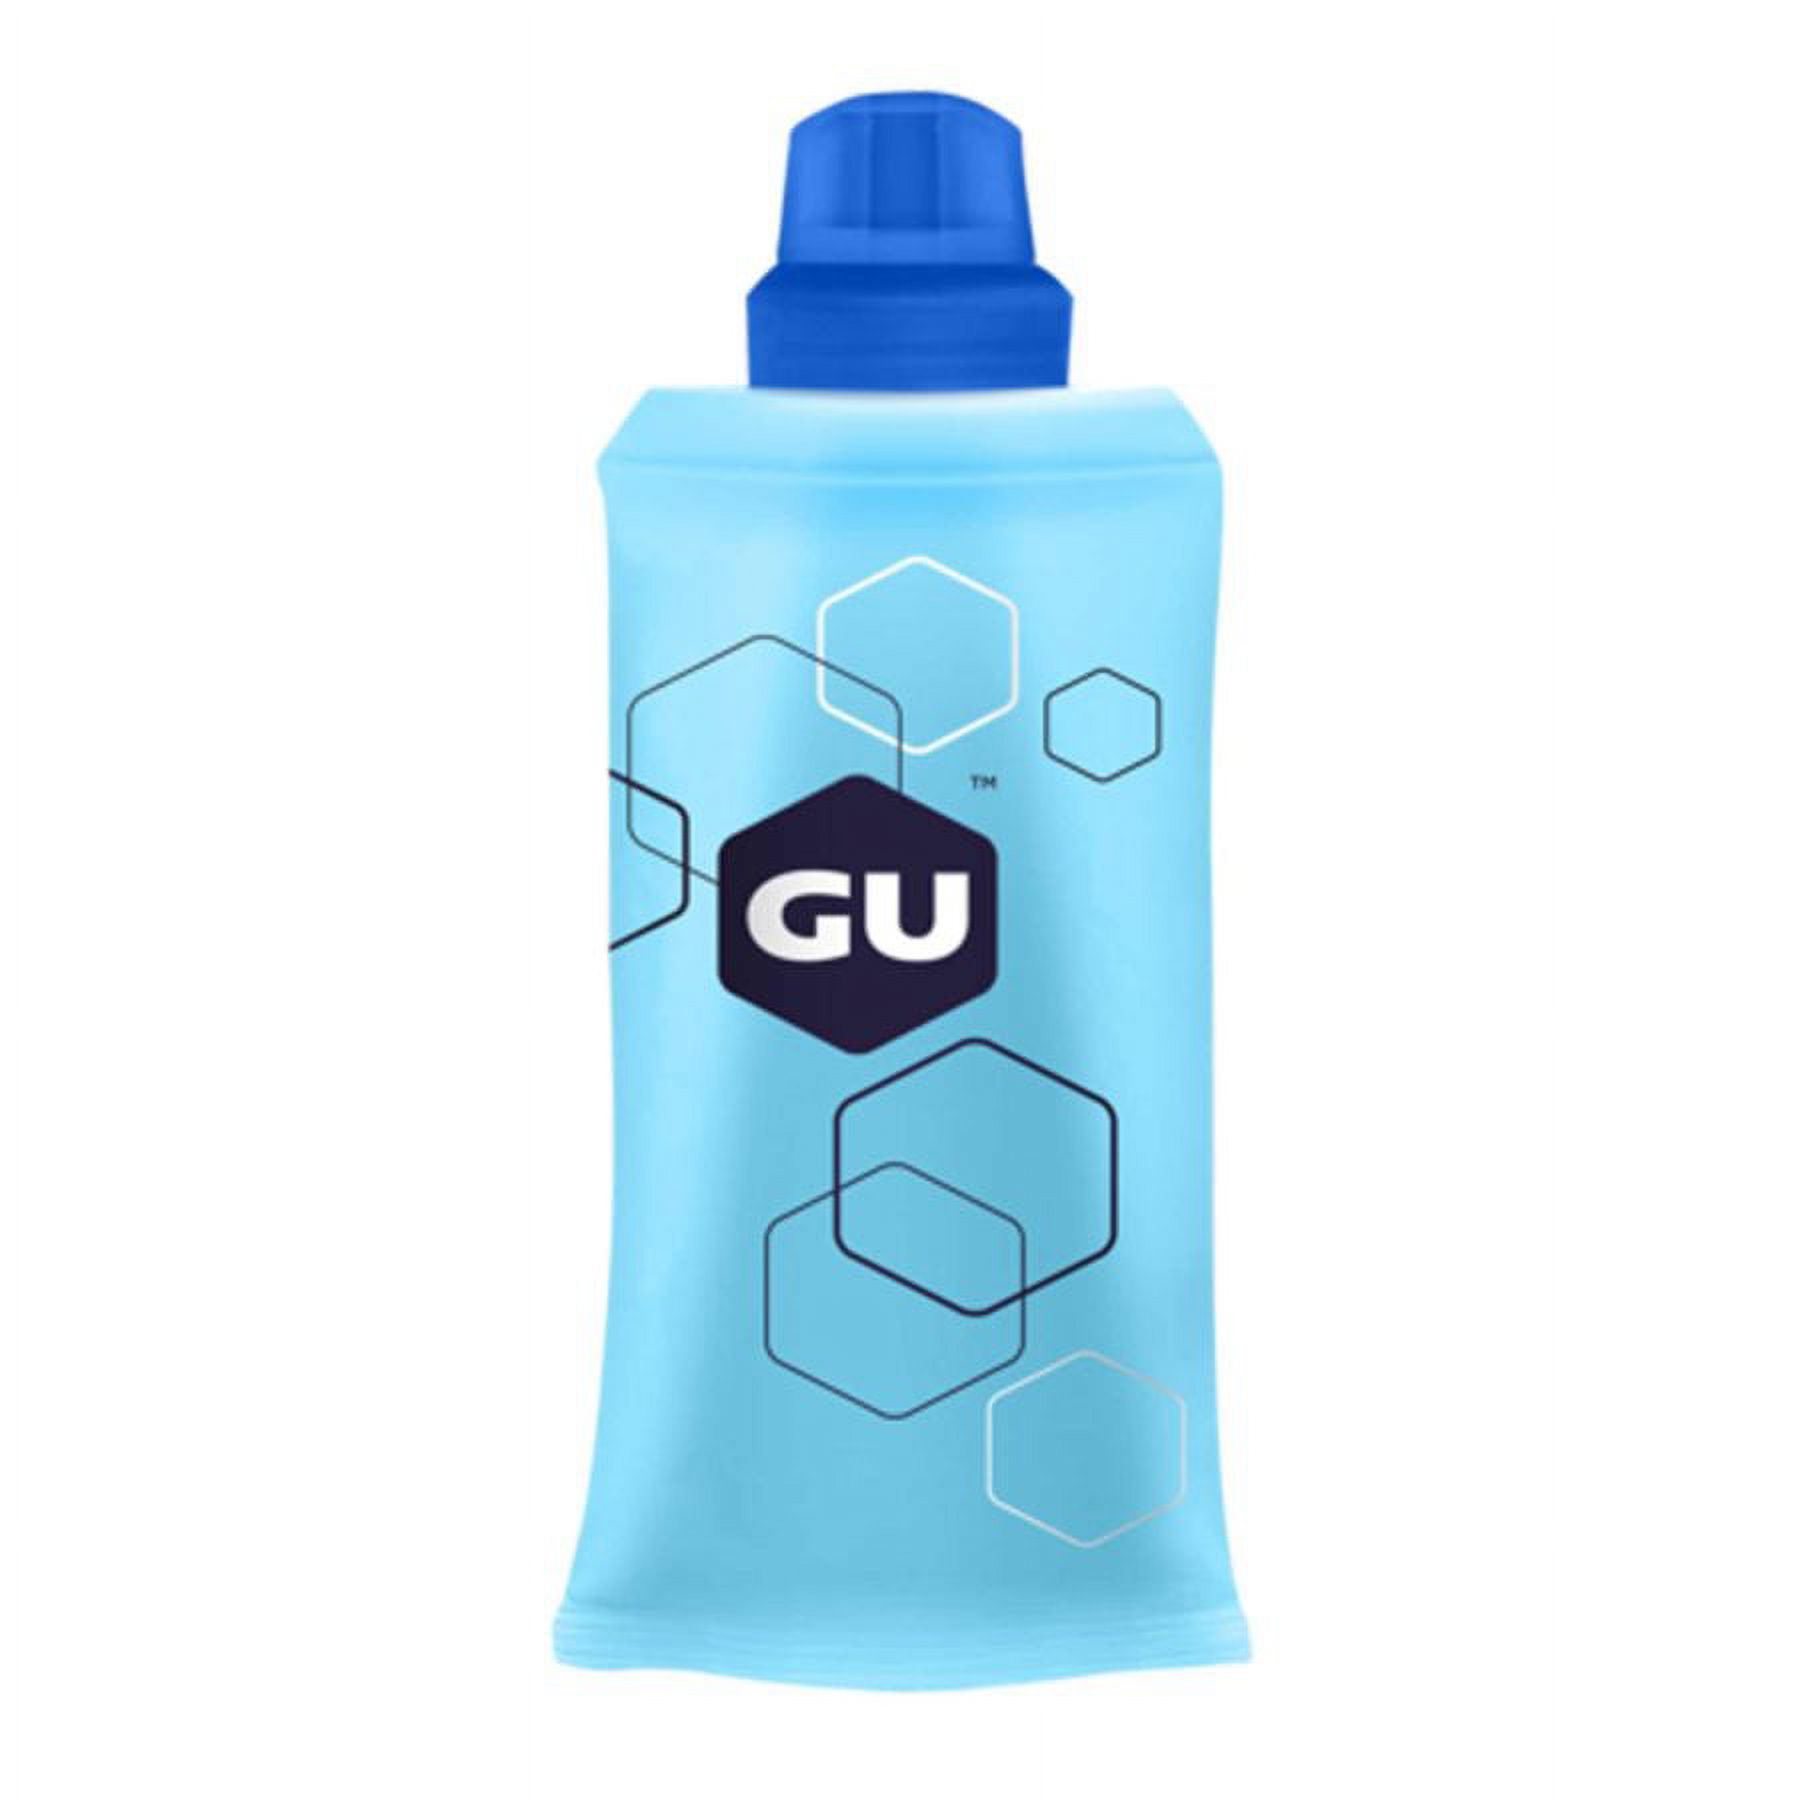 GU Energy Gel Flask - image 2 of 2